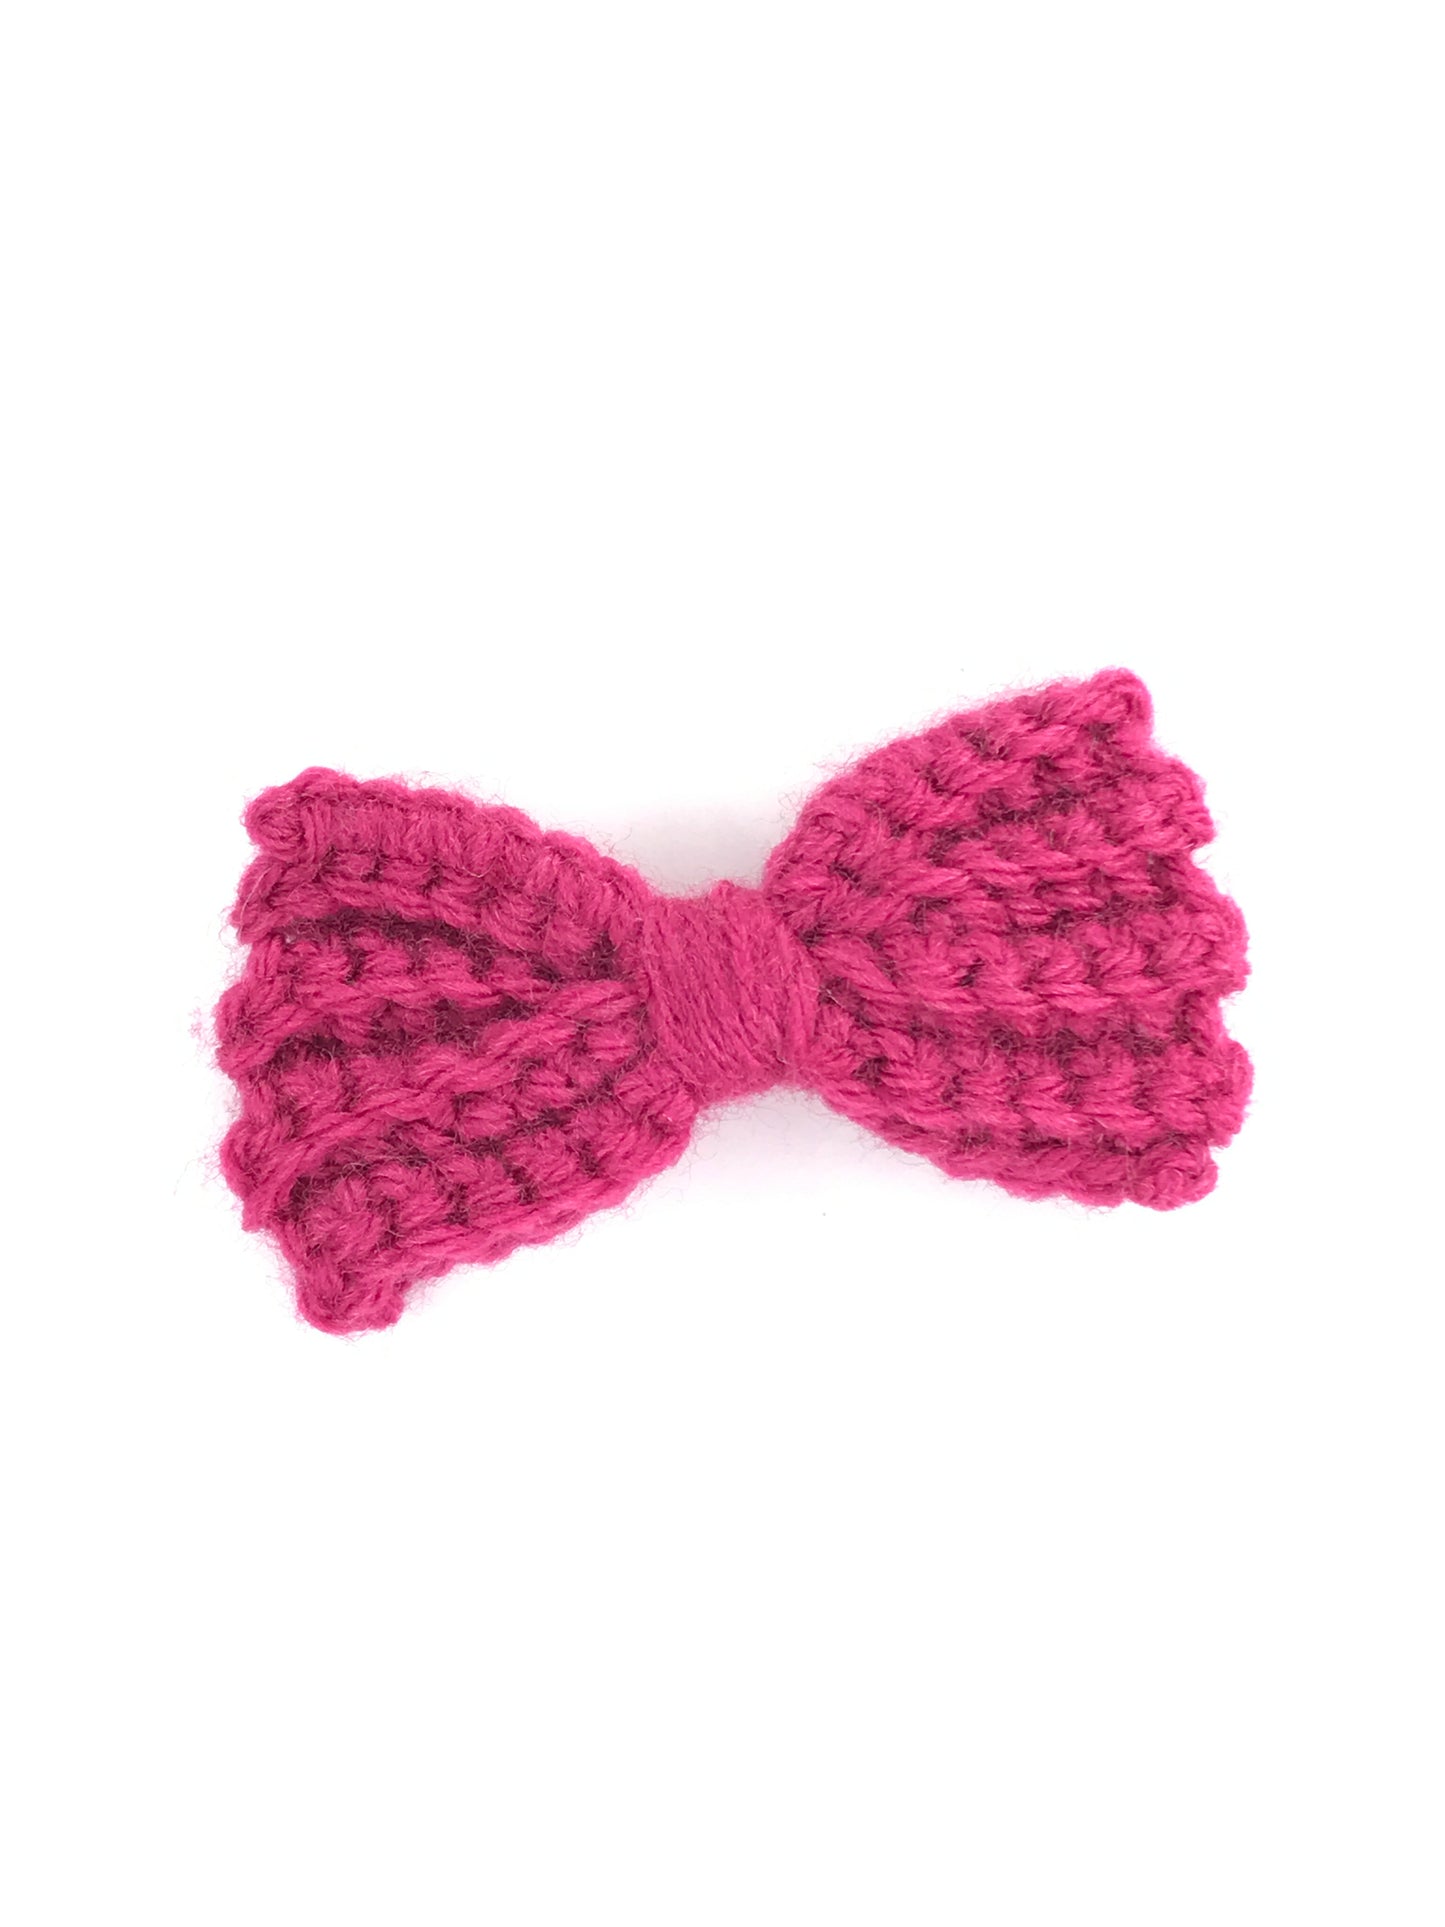 Crochet Hair Bows - Crochet Bow Clips